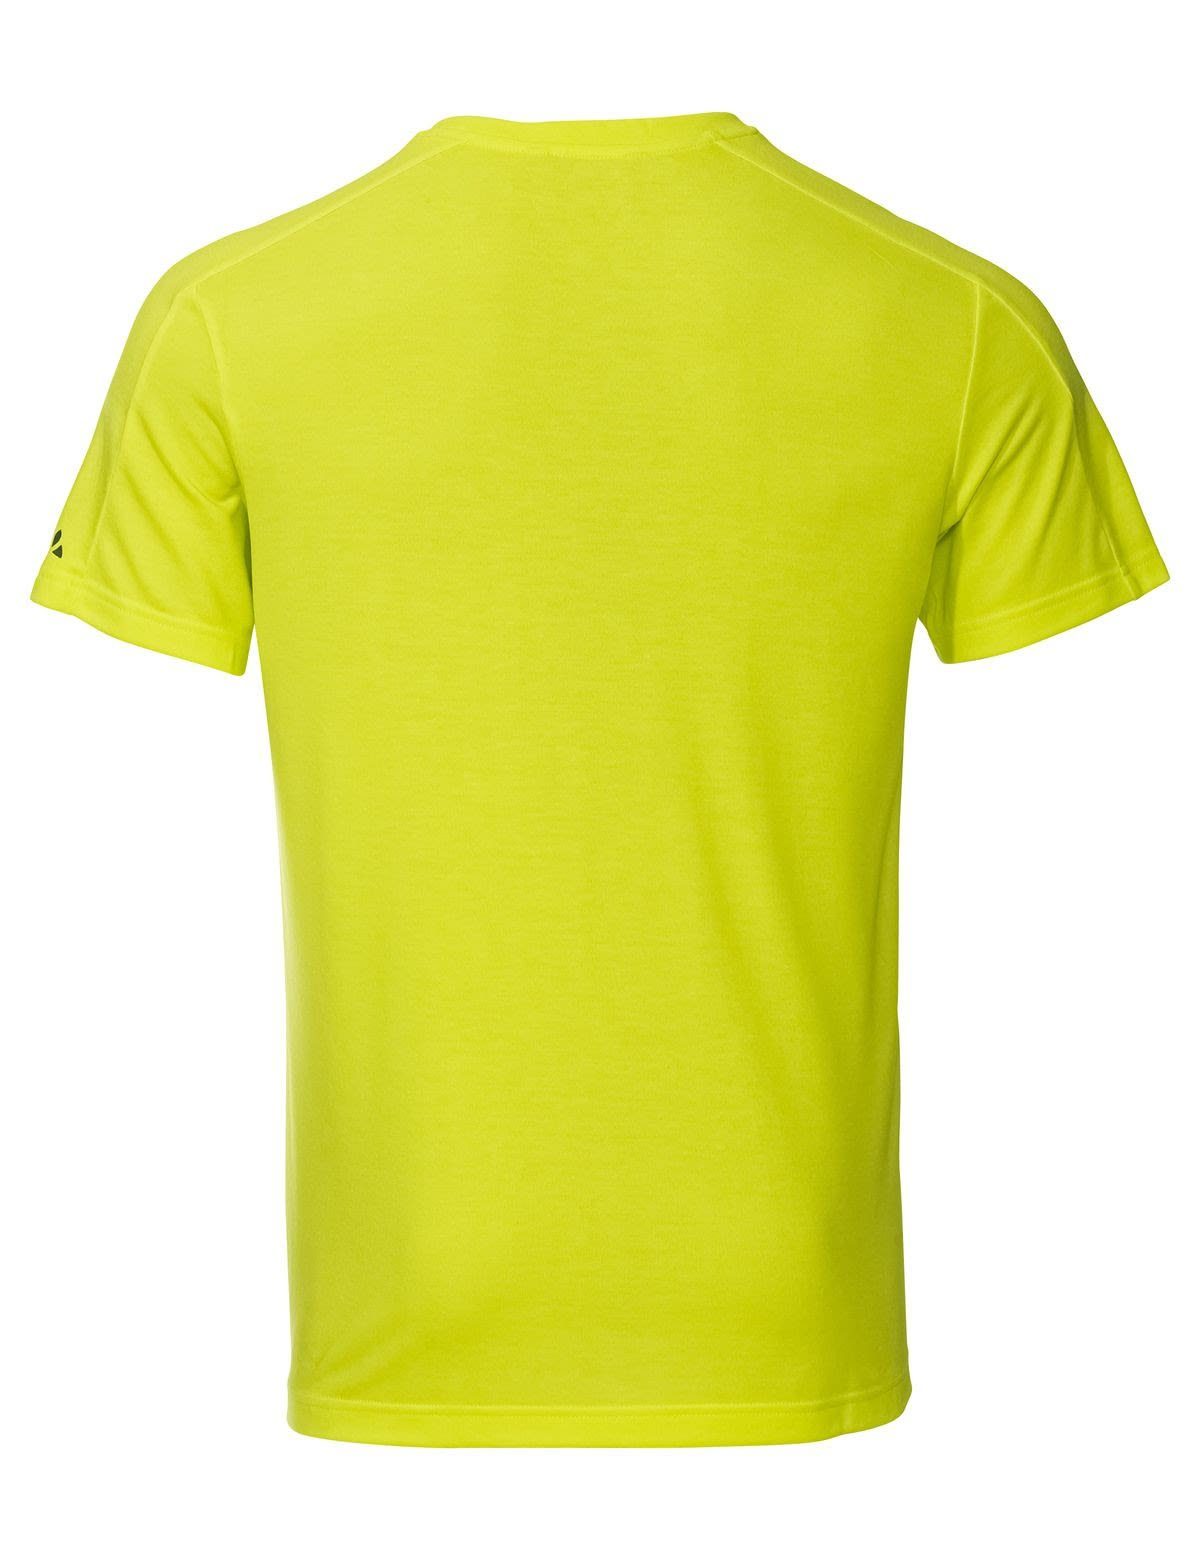 VAUDE T-Shirt T-shirt Herren Vaude Kurzarm-Shirt Green Gleann Mens Bright